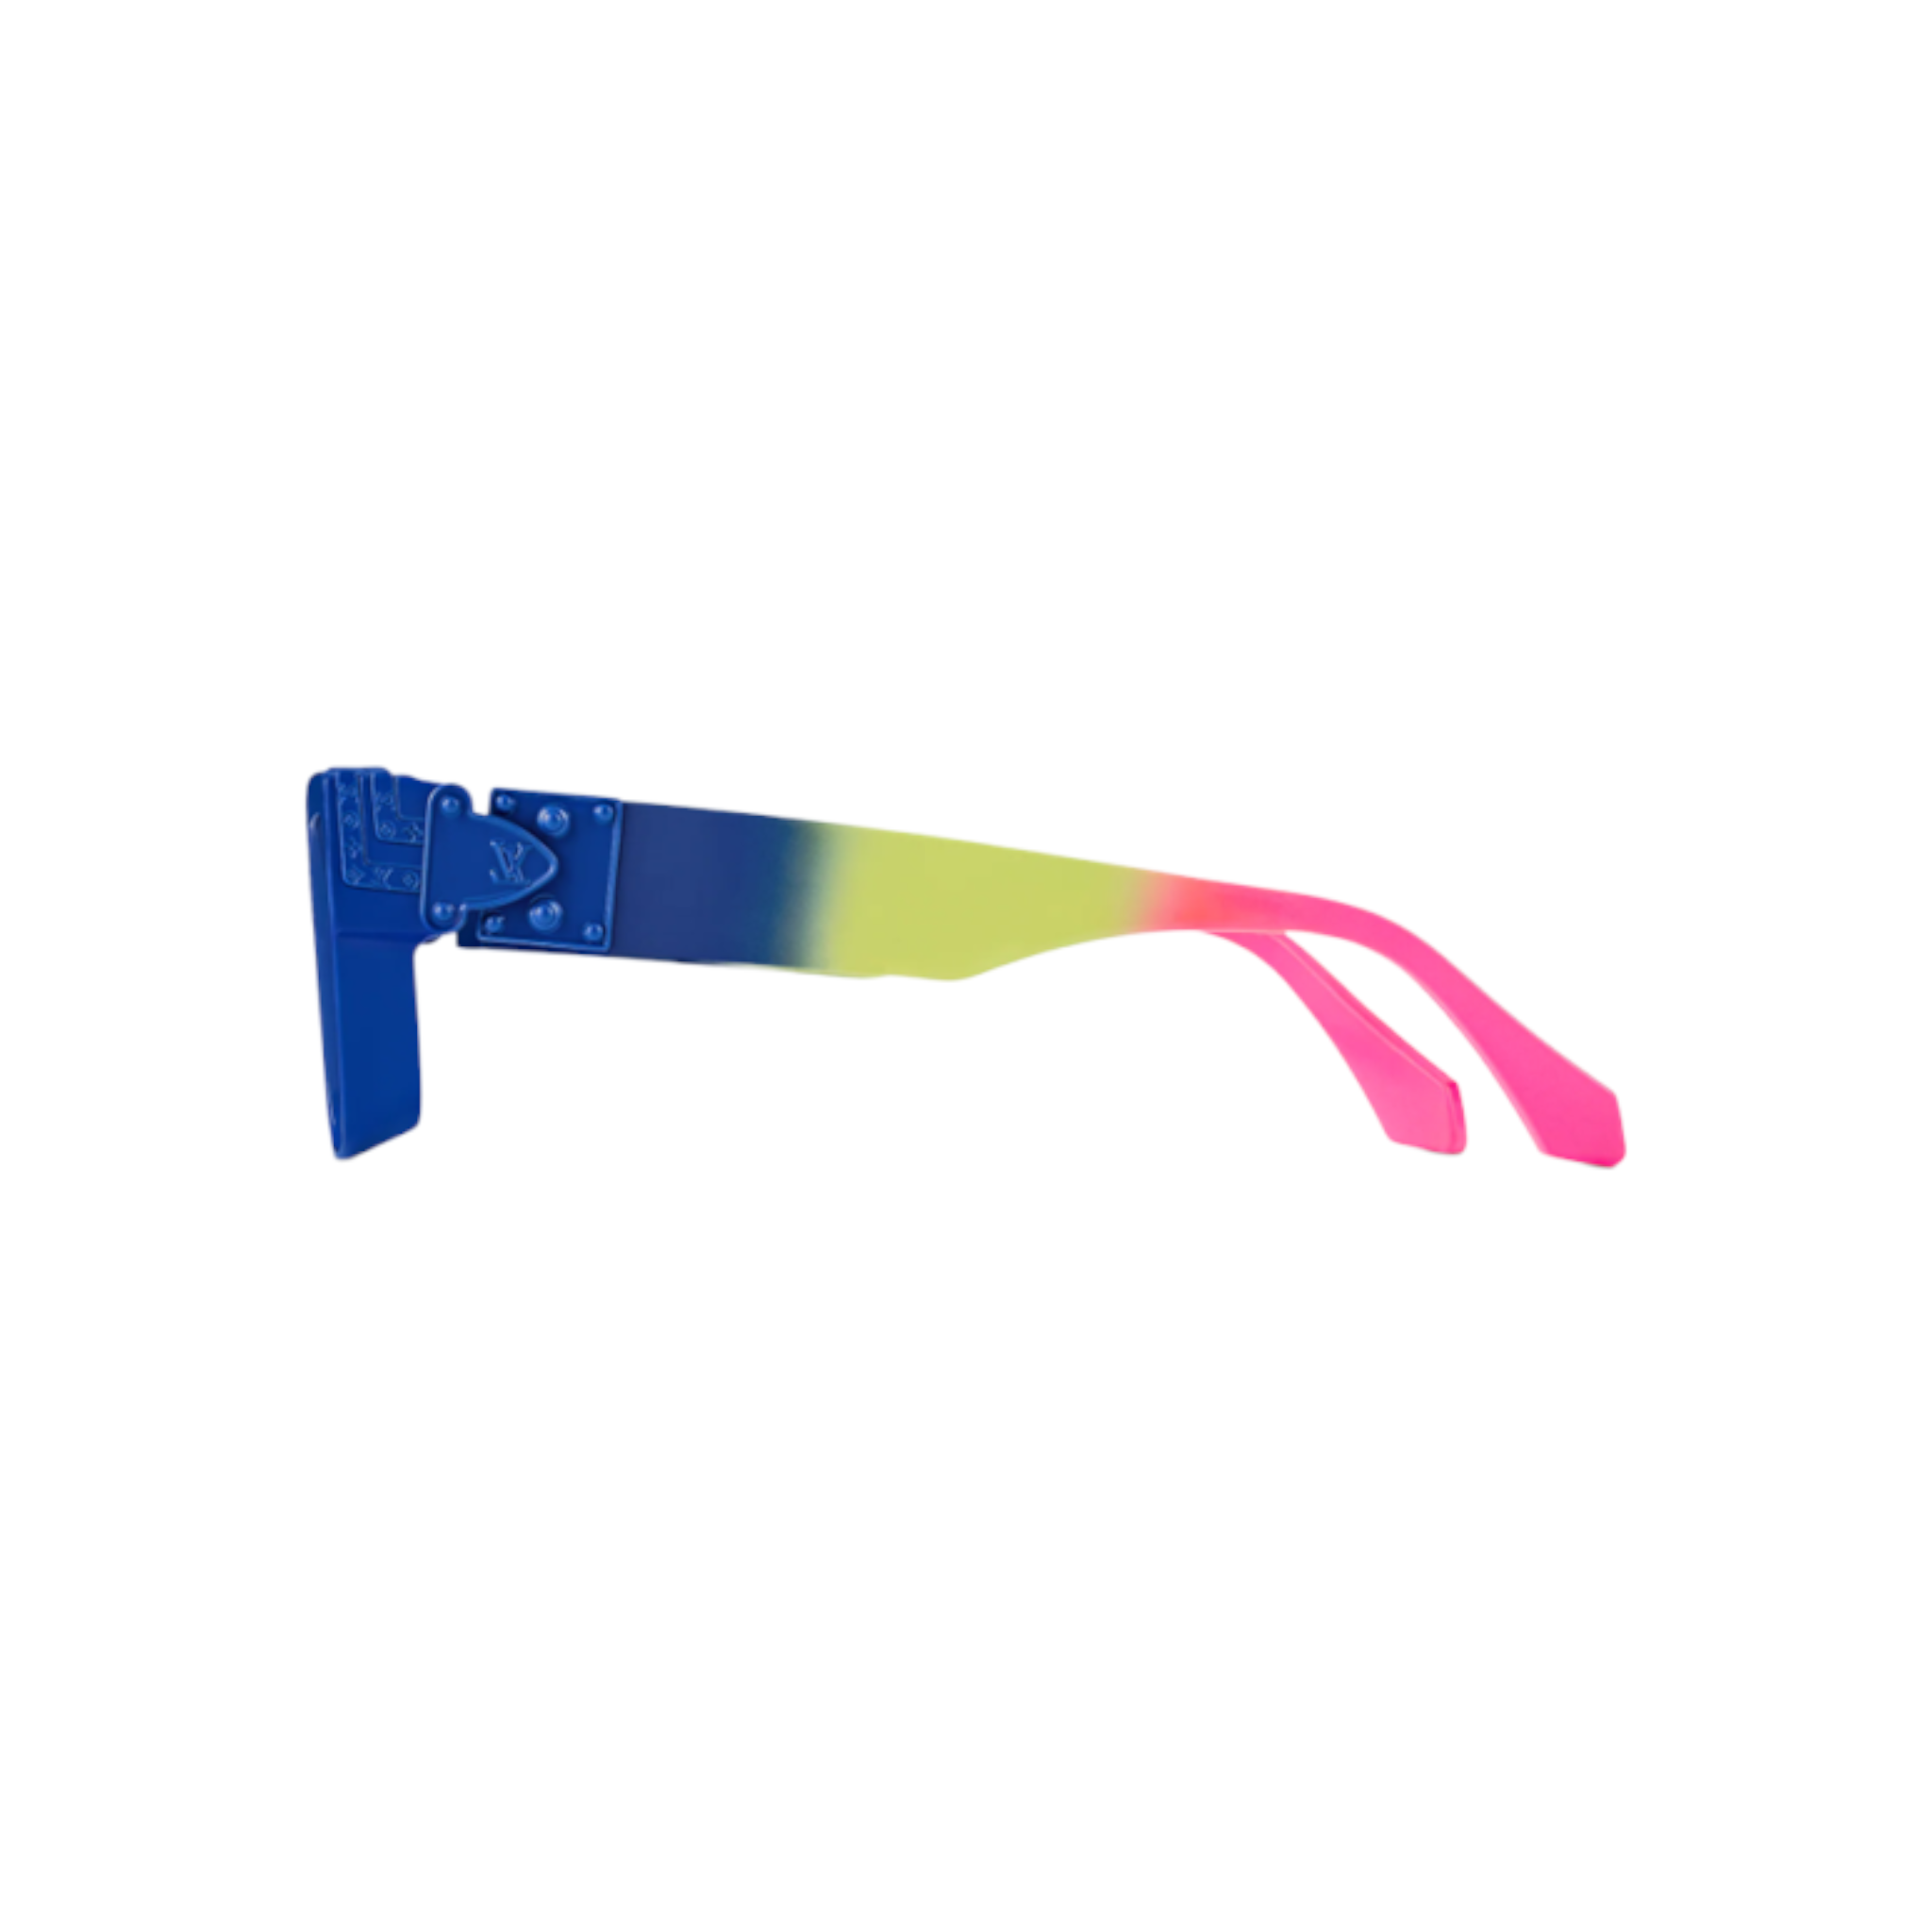 Louis Vuitton Blue Sunglasses for Women